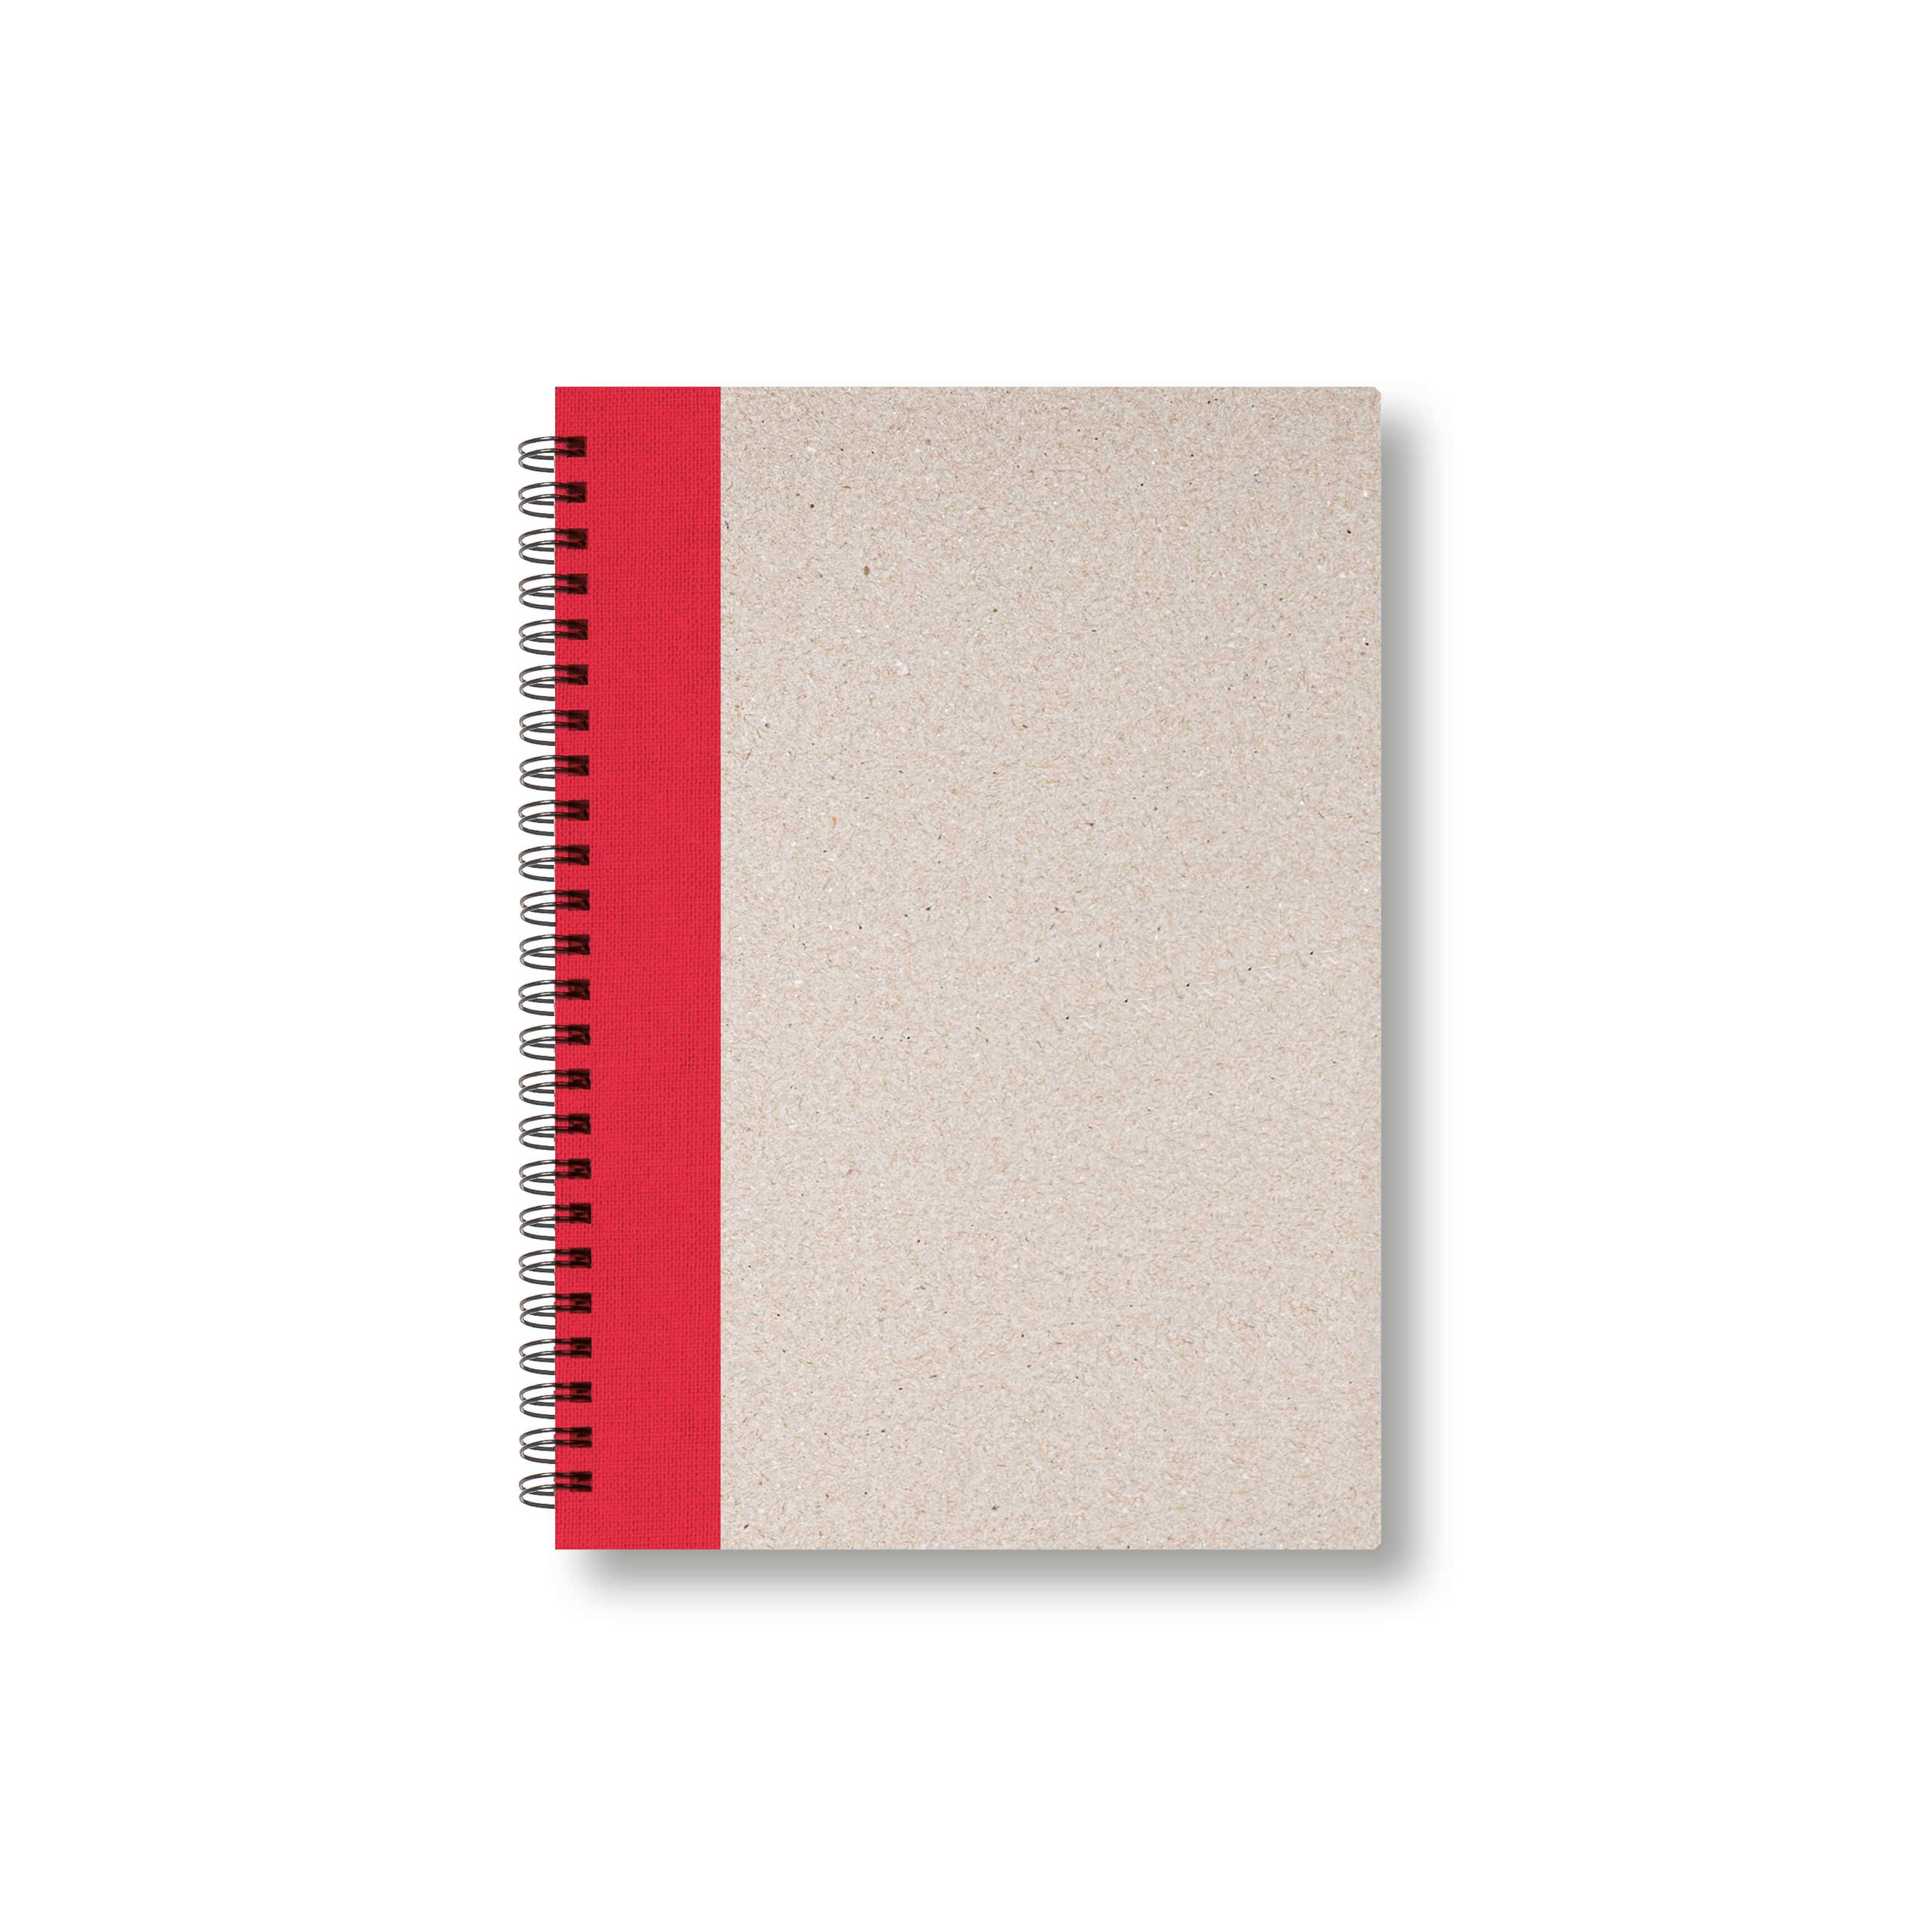 BOBO Zápisník, B6, linkovaný, červený, konfiguruj si obálku